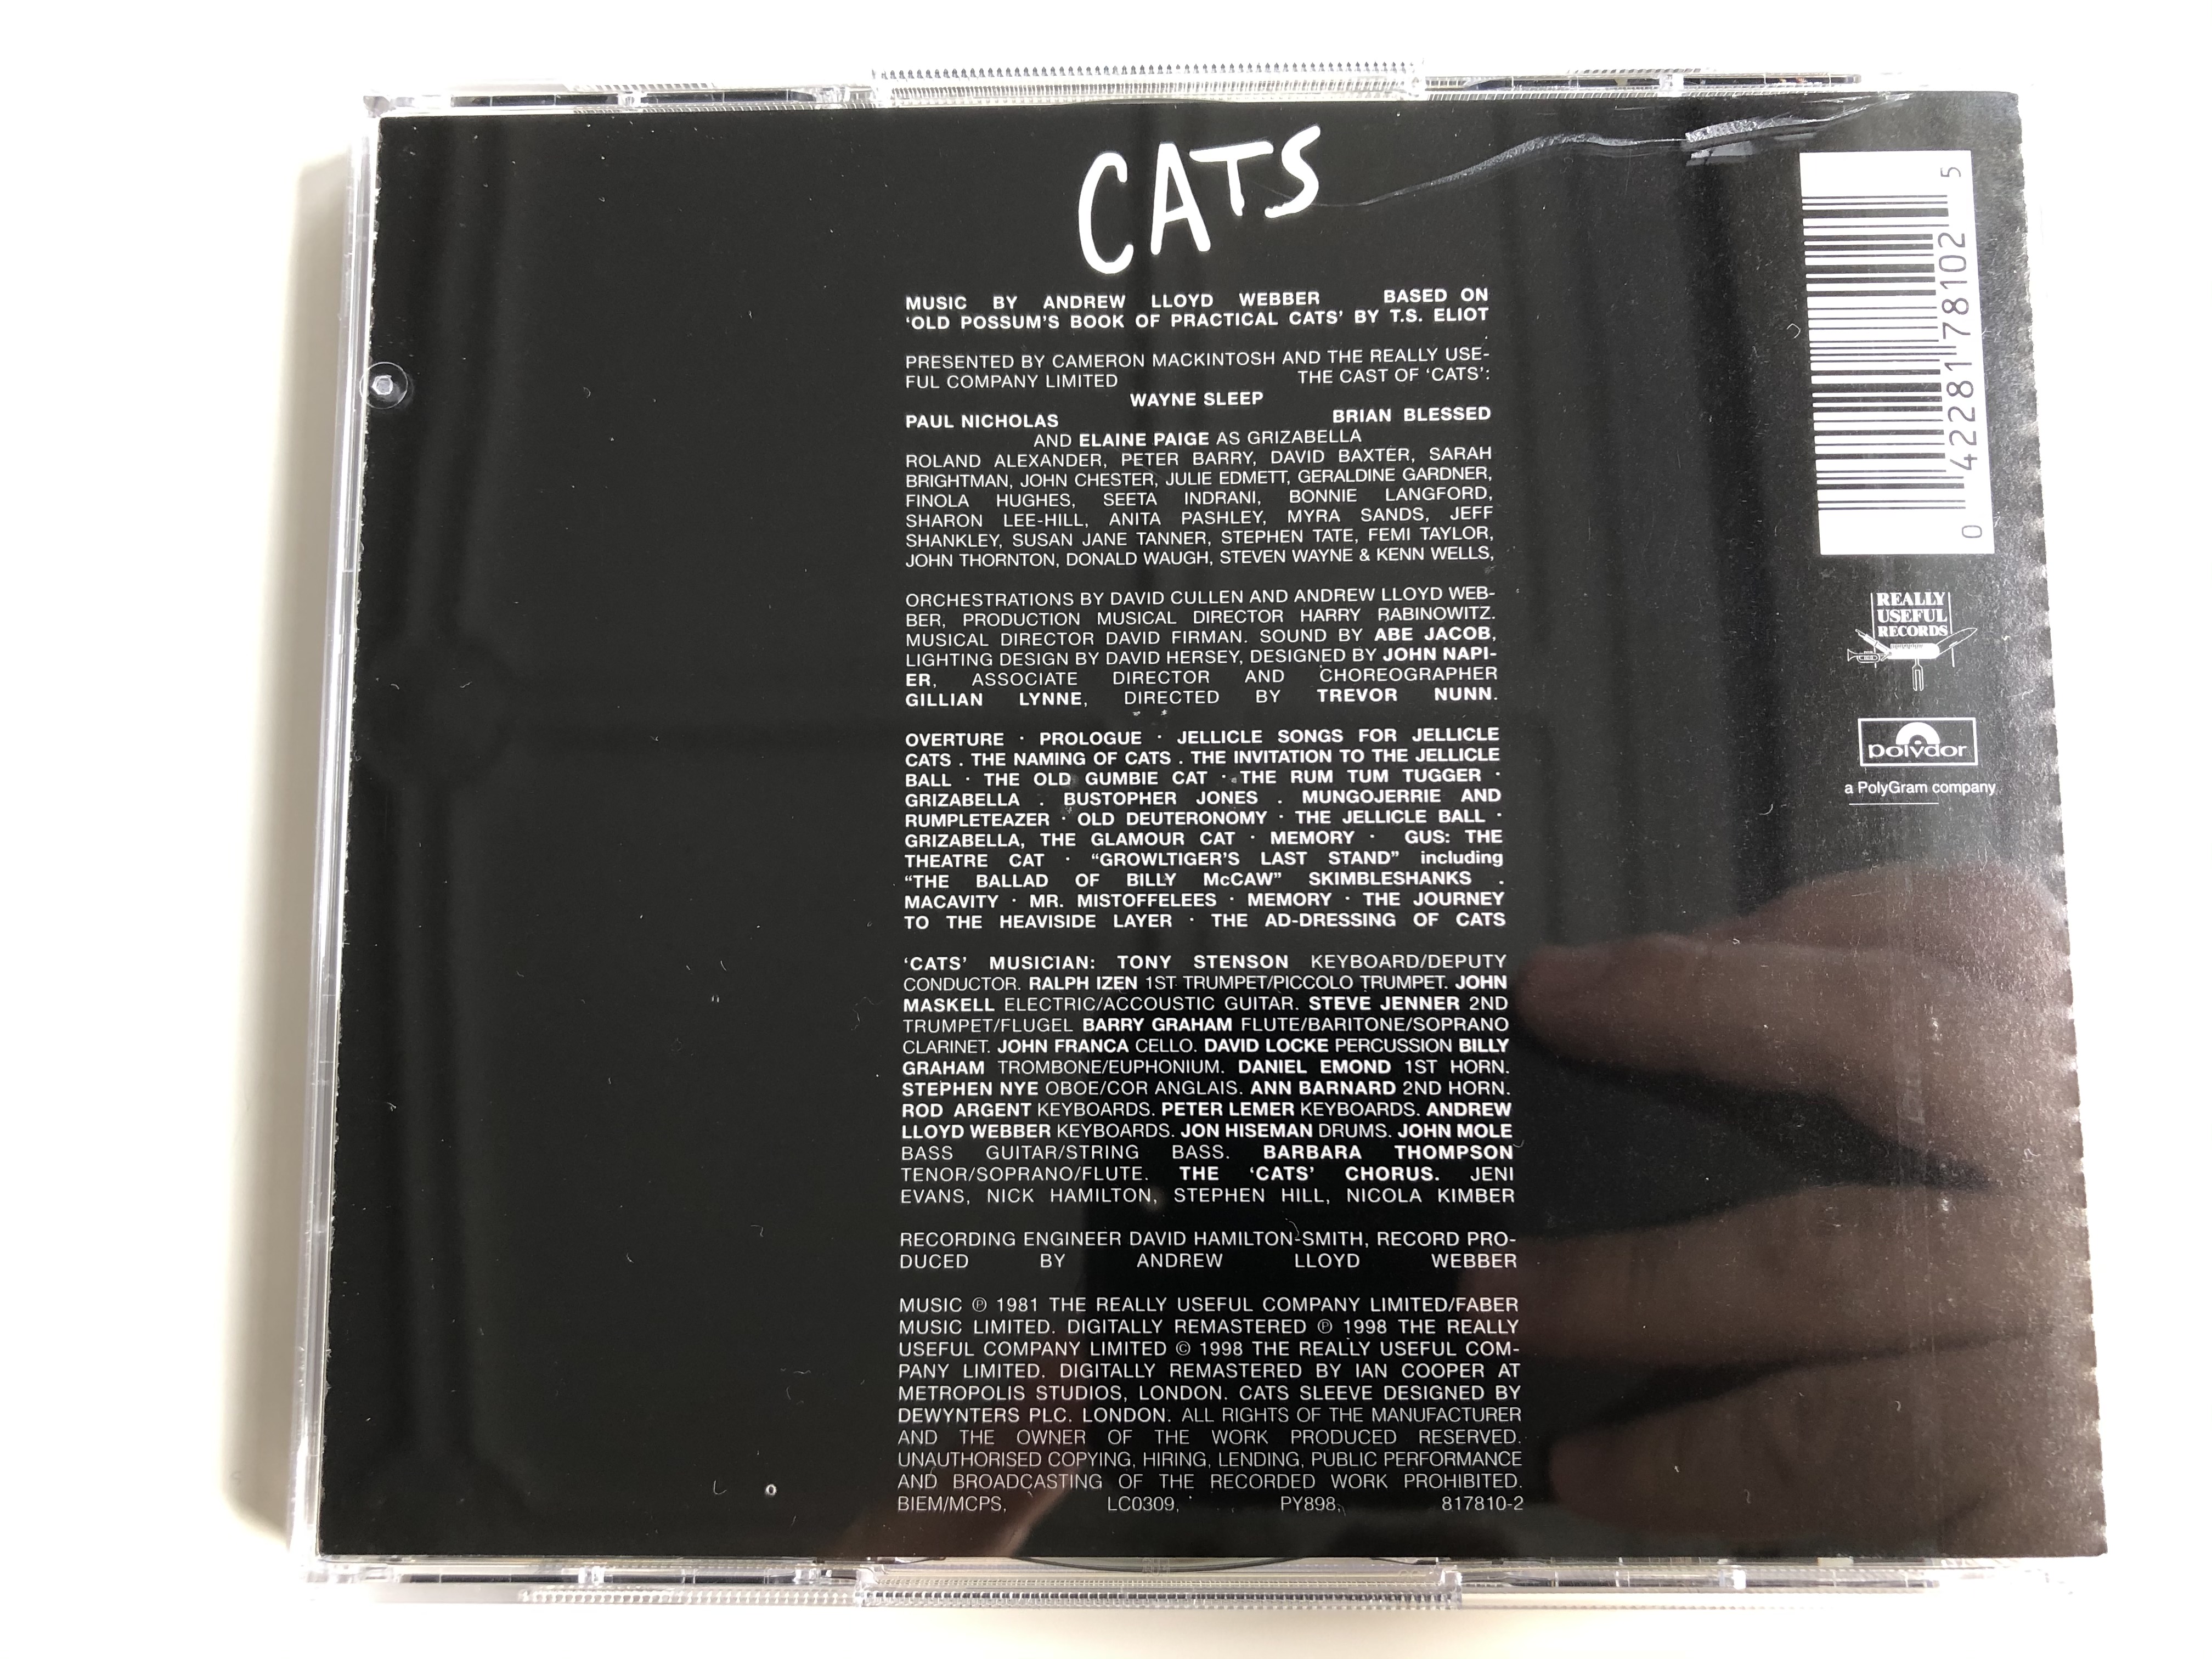 cats-andrew-lloyd-webber-polydor-2x-audio-cd-1998-817-061-2-6-.jpg